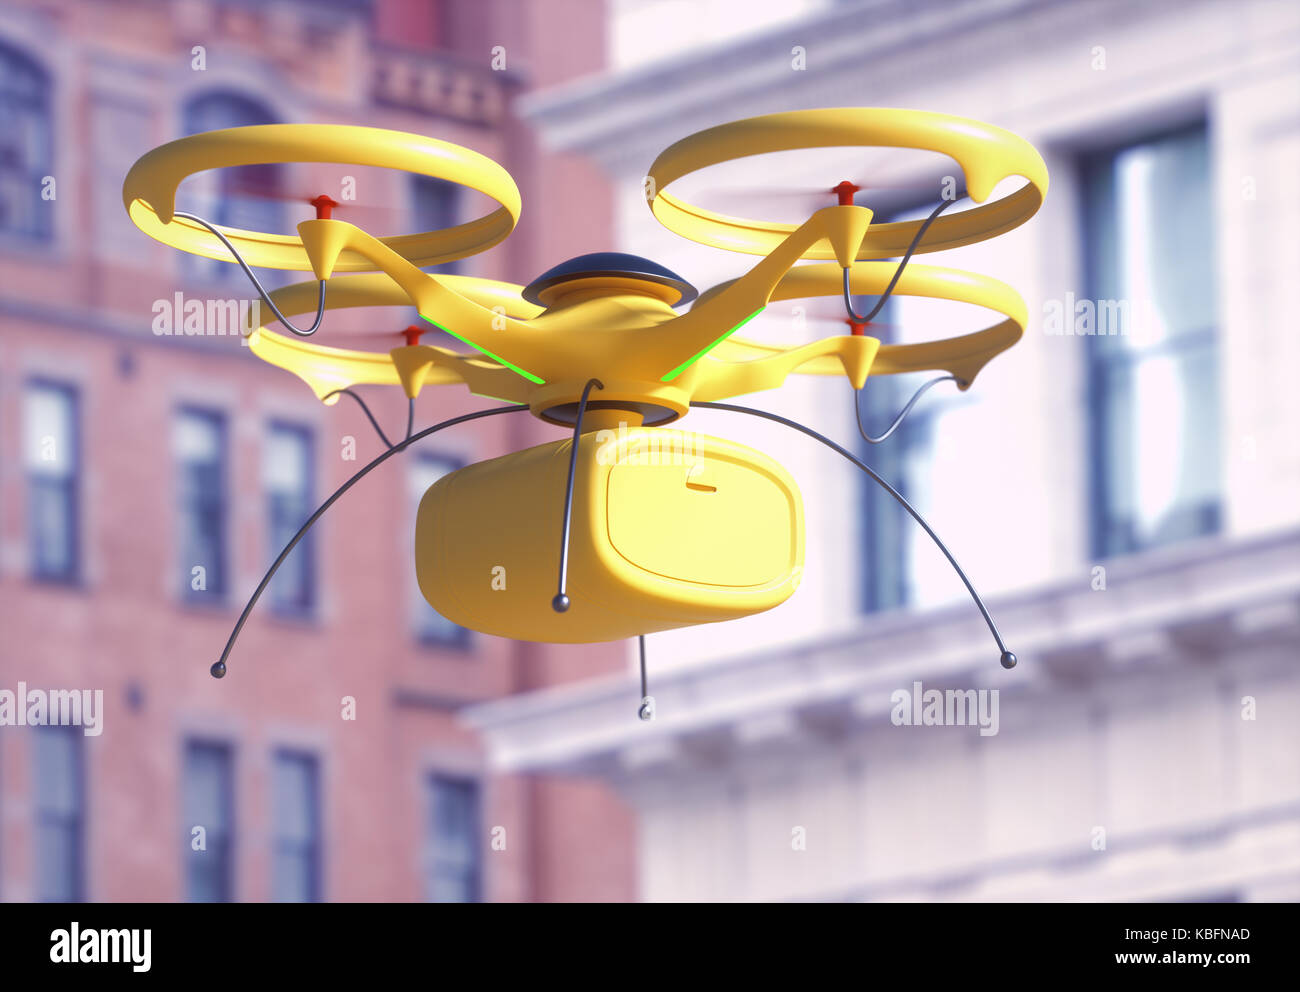 Ilustración 3d. Imagen conceptual de entrega de paquete por zumbido. vehículo aéreo no tripulado (UAV) utilizados para el transporte de paquetes. Foto de stock